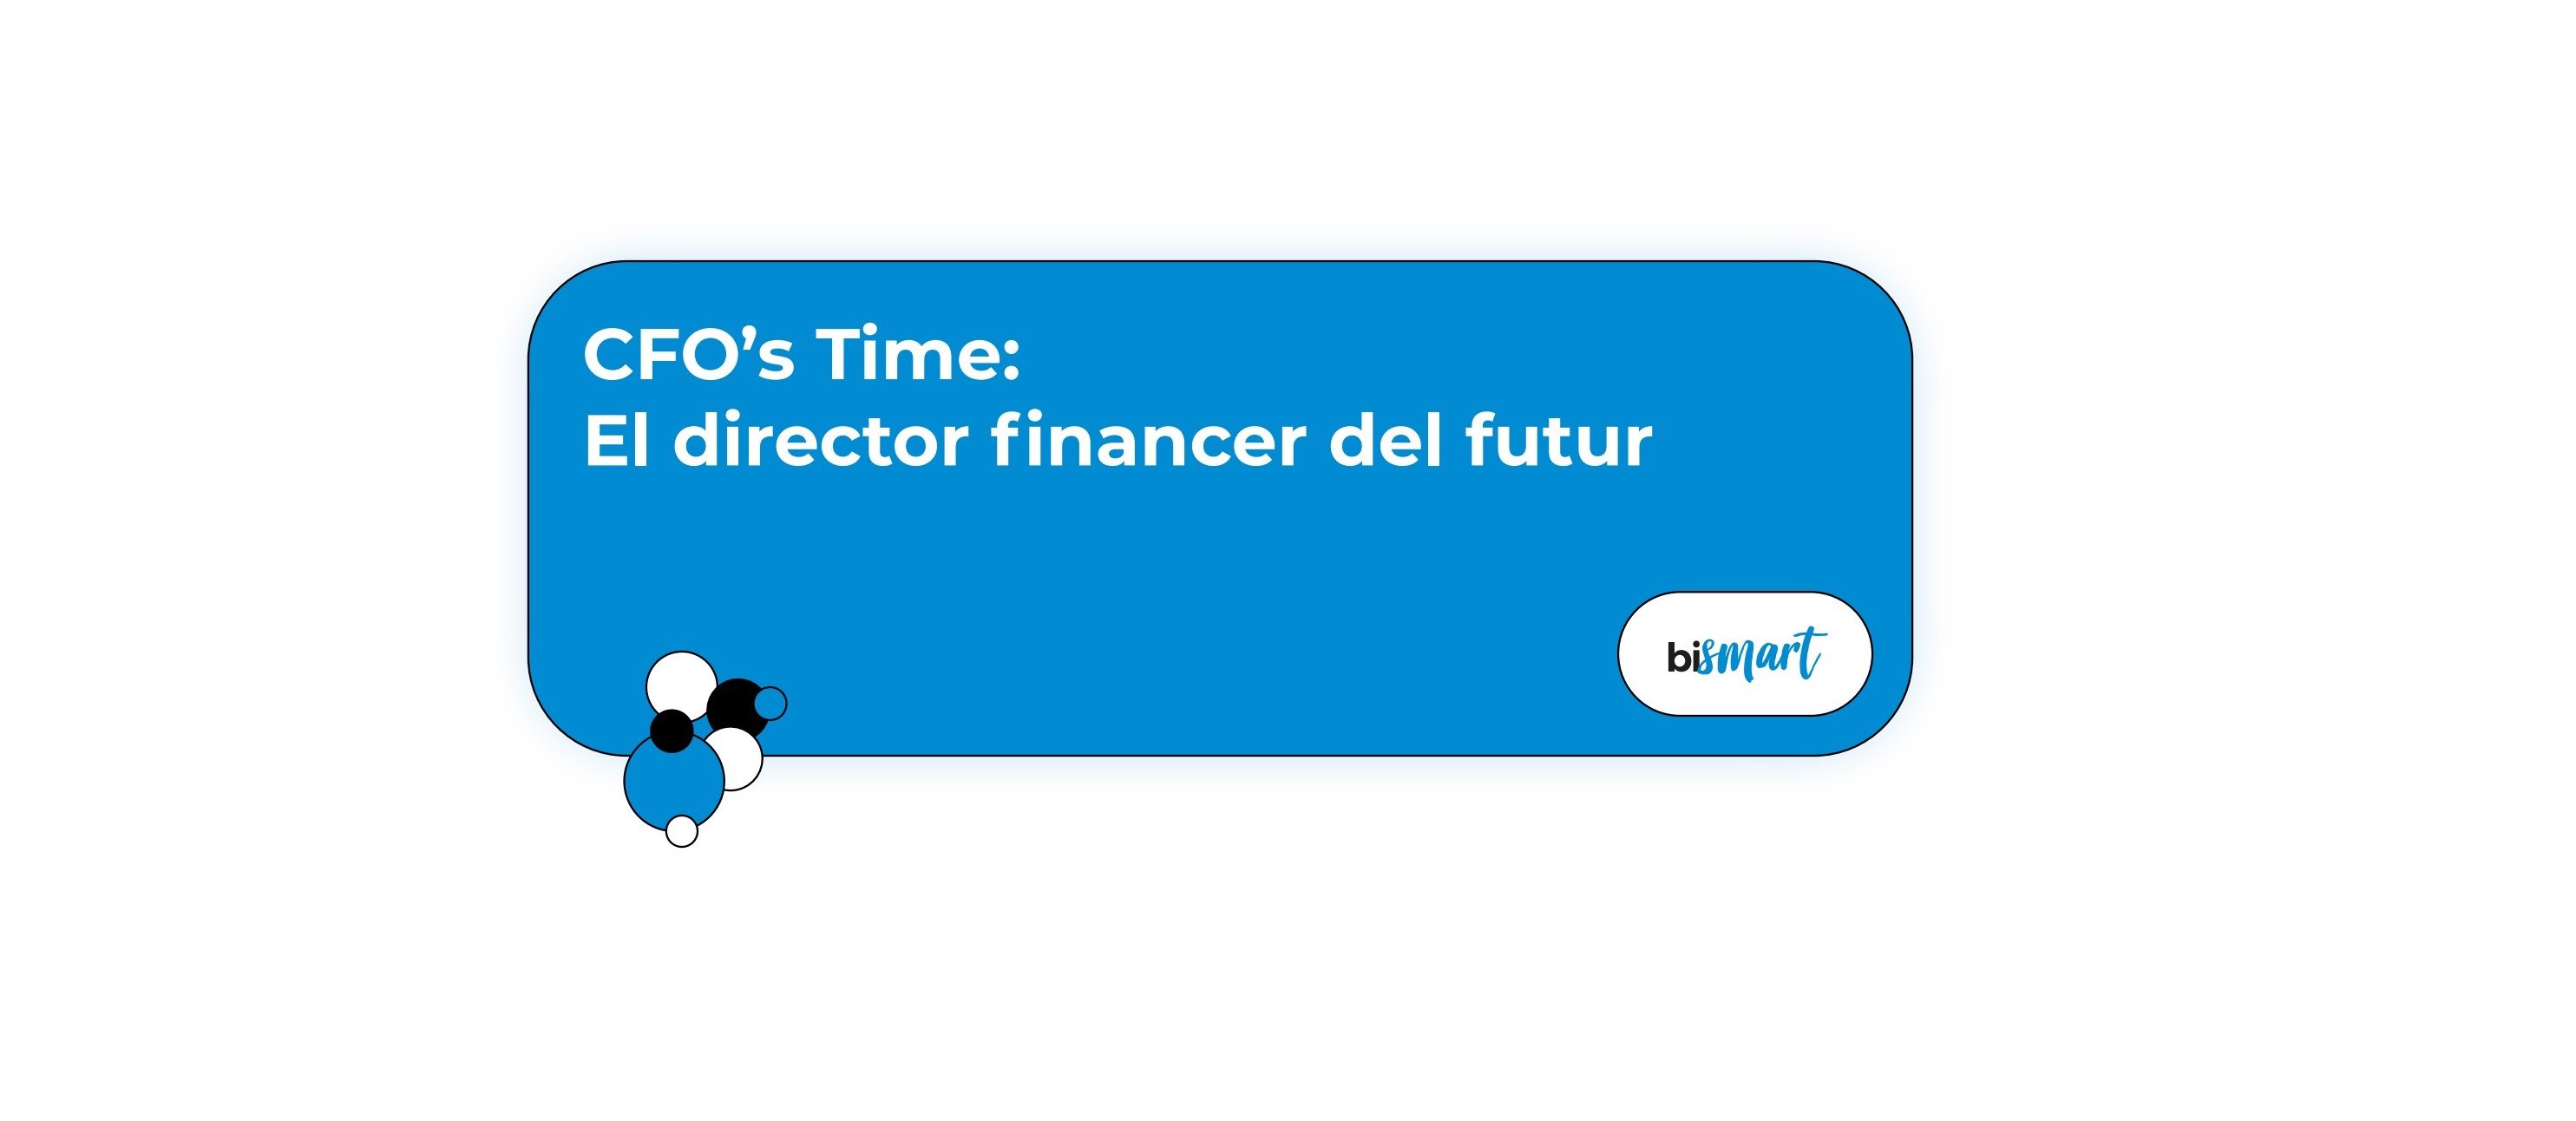 Guia CFO Time El director financer del futur